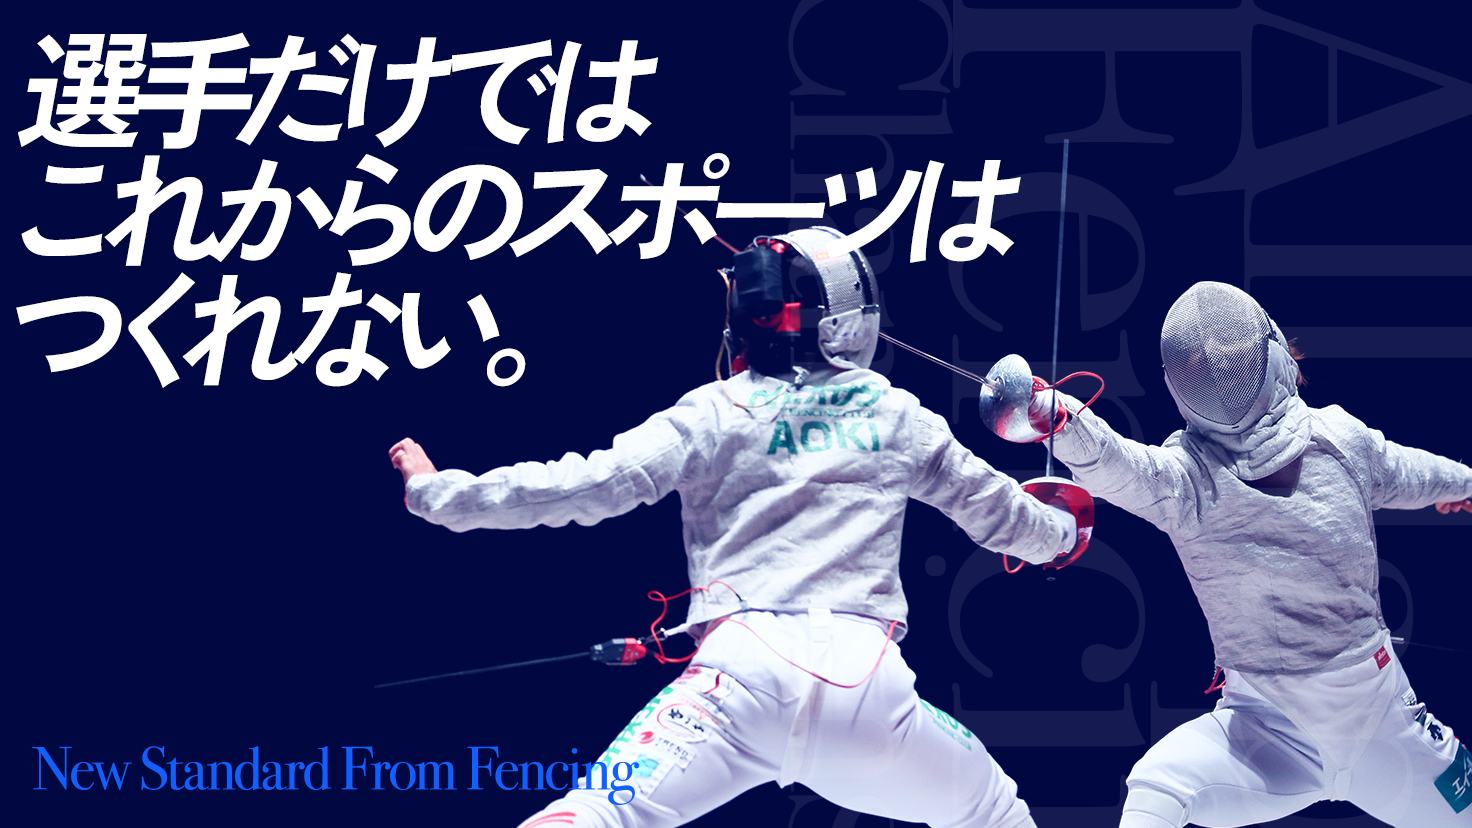 日本フェンシング協会 クラウドファンディングを開始 公益社団法人日本フェンシング協会のプレスリリース